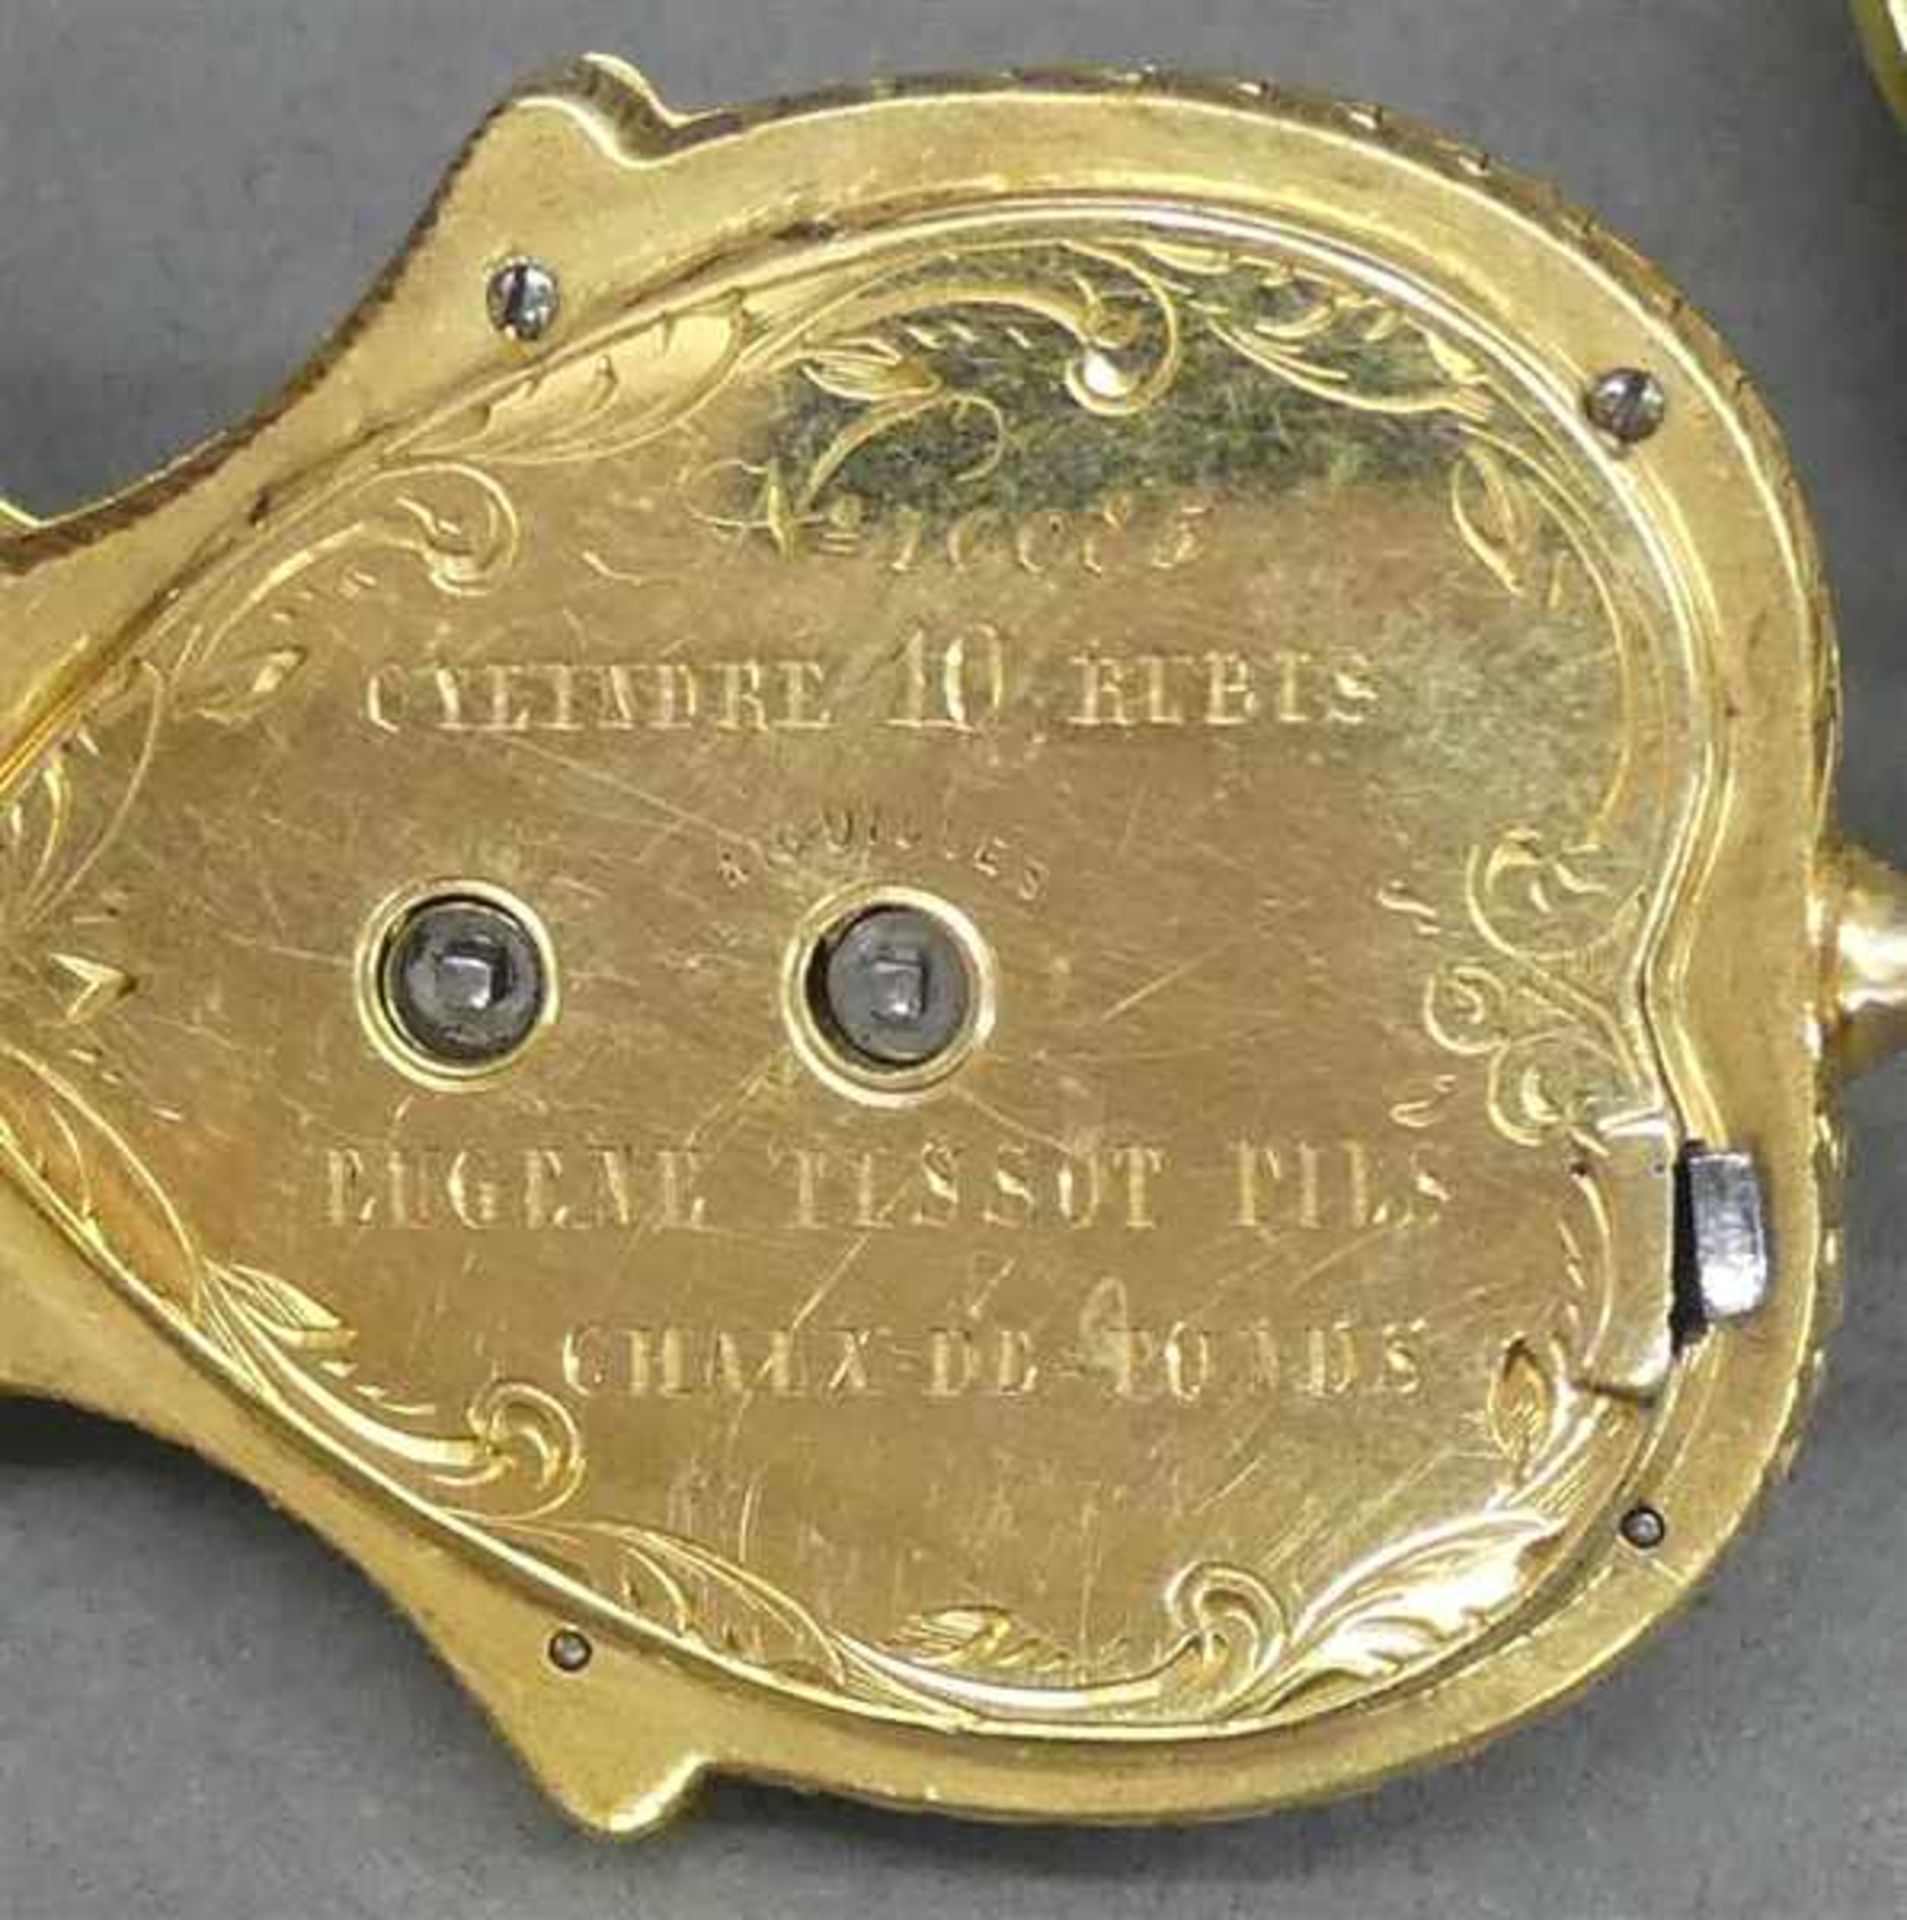 Damenhängeuhr18 kt. Gelbgold, "Eugene Tissot Fils", Chaux de Fonds, in Form eines Blumenkörbchens, - Bild 6 aus 6